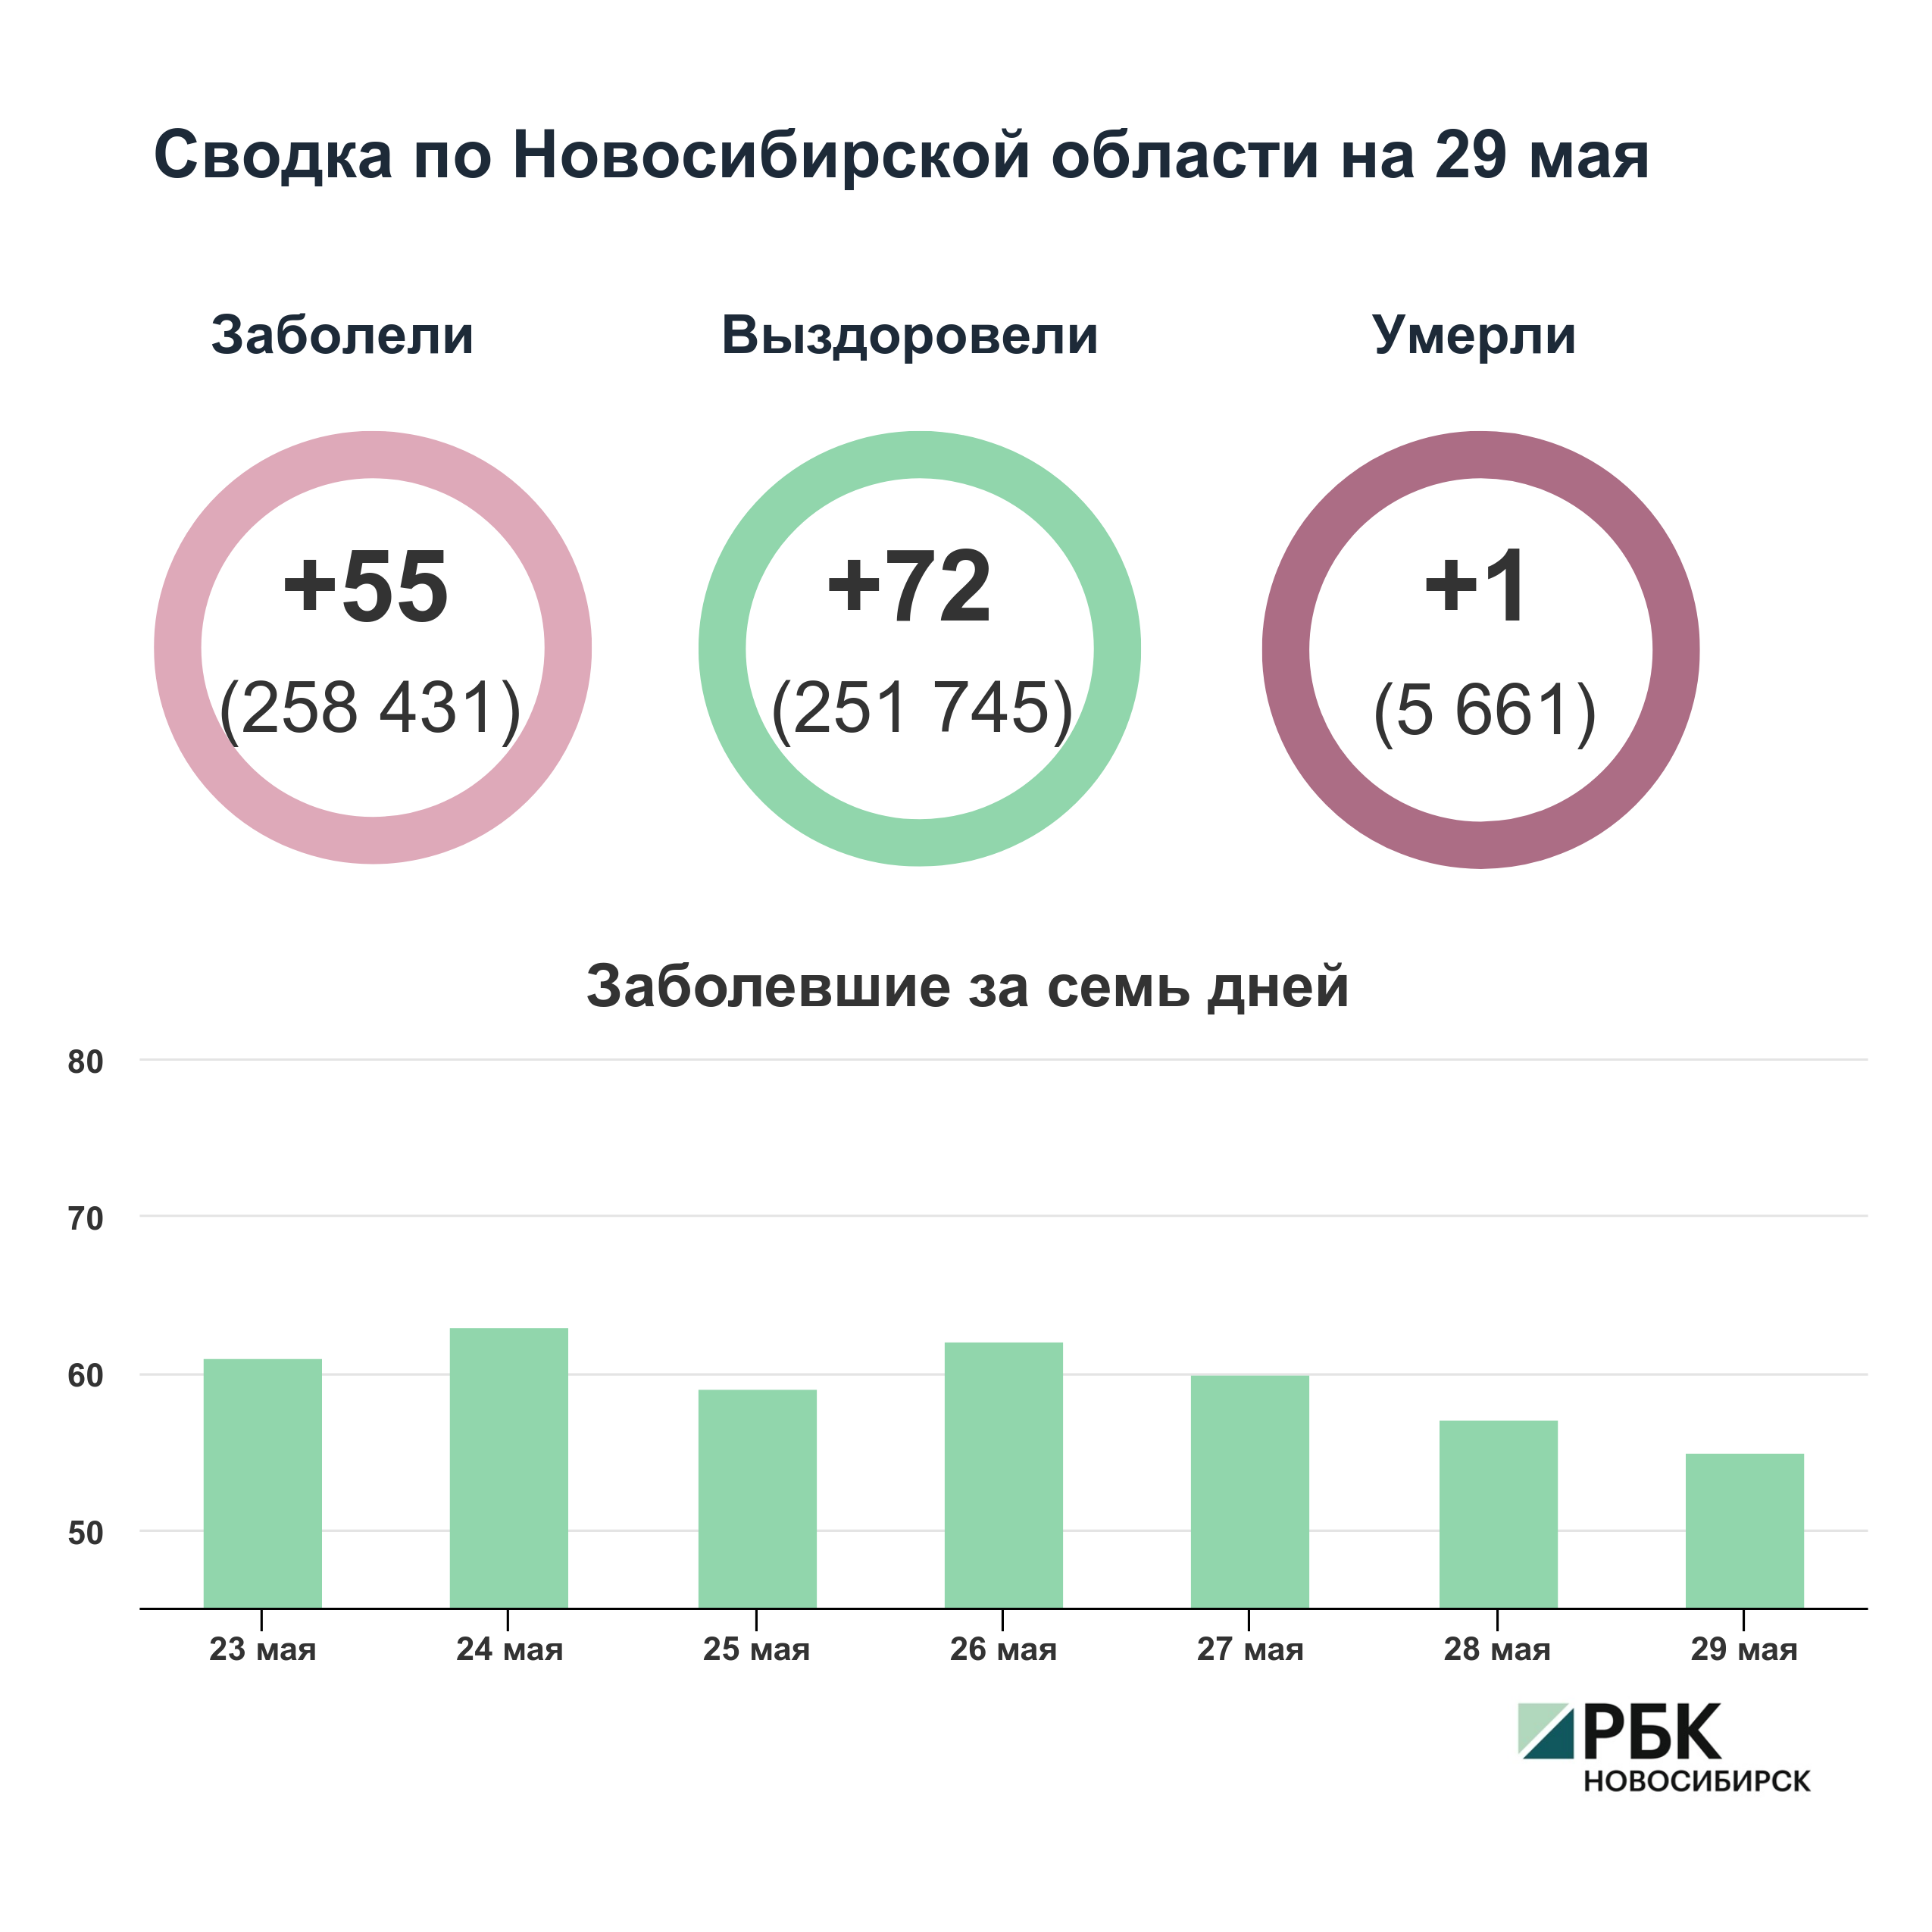 Коронавирус в Новосибирске: сводка на 29 мая